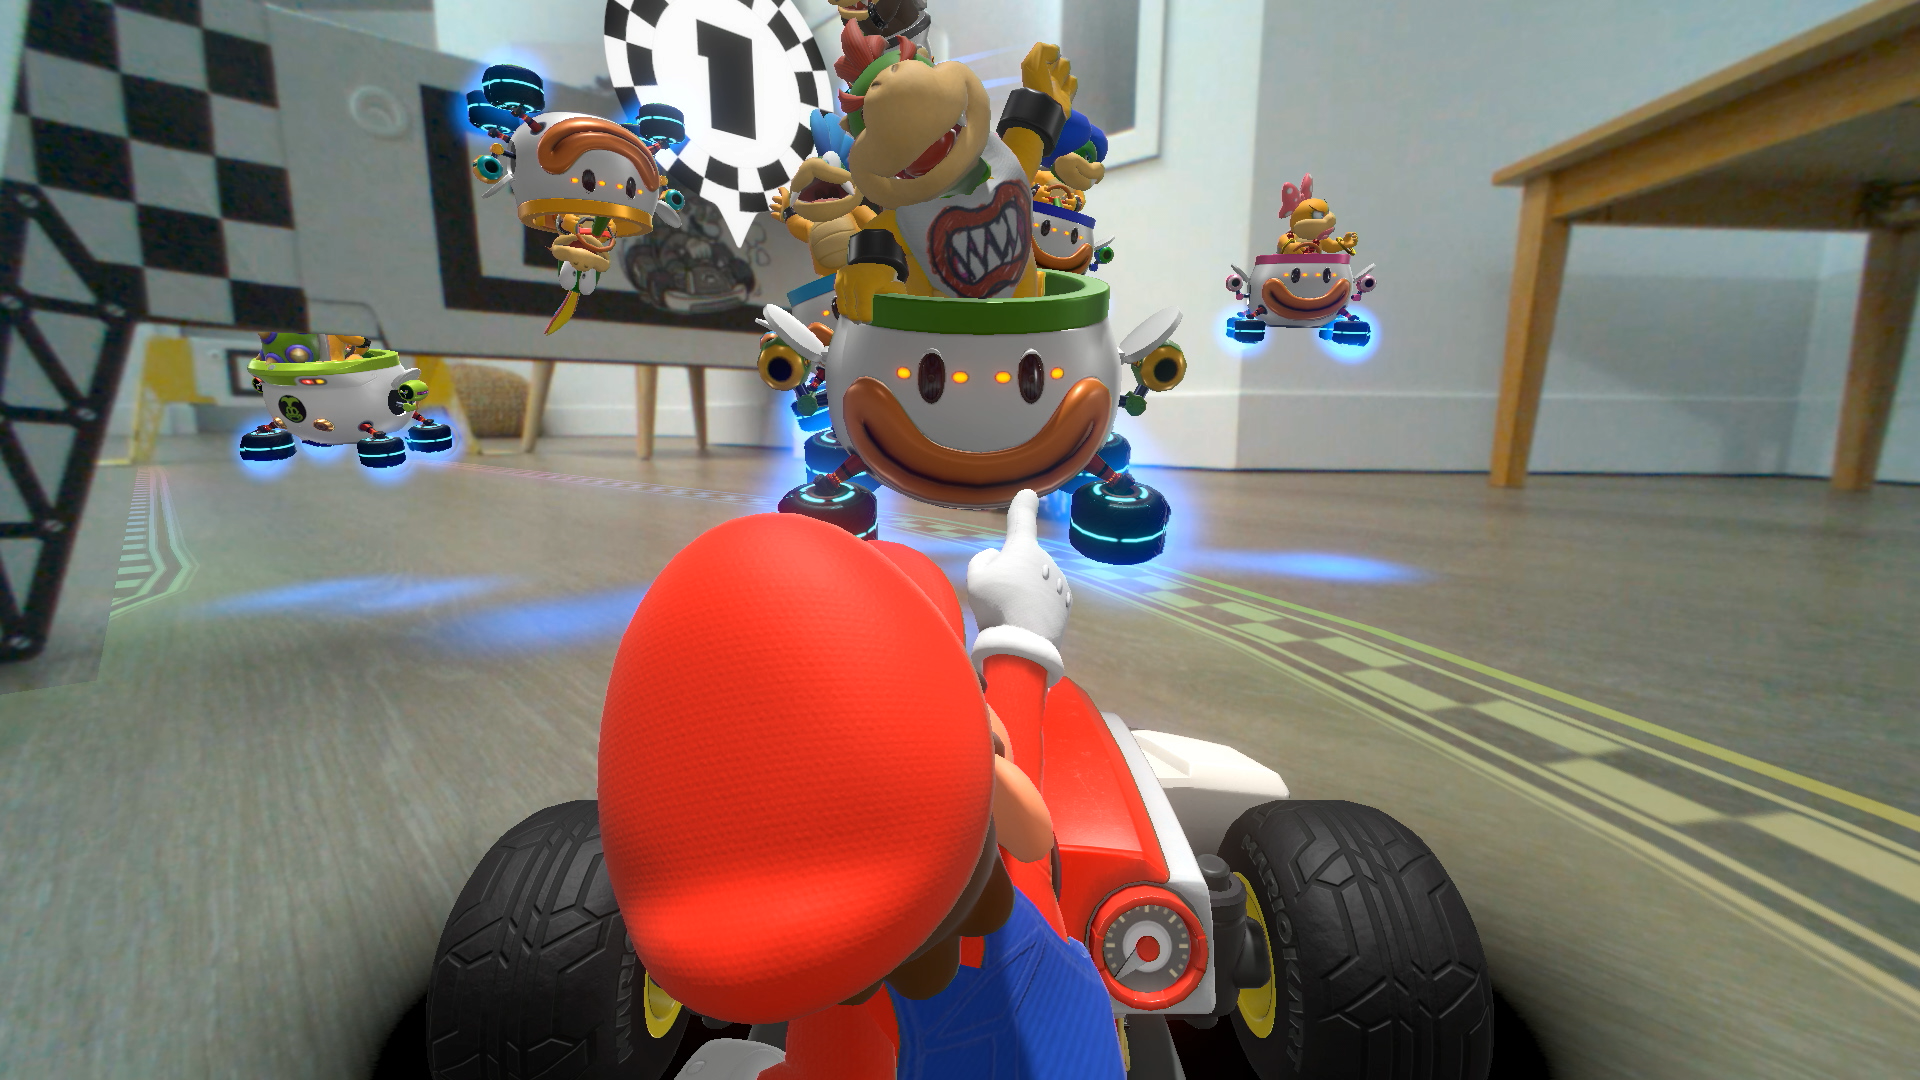 Super Mario Kart da Nintendo: 20 fatos e curiosidades